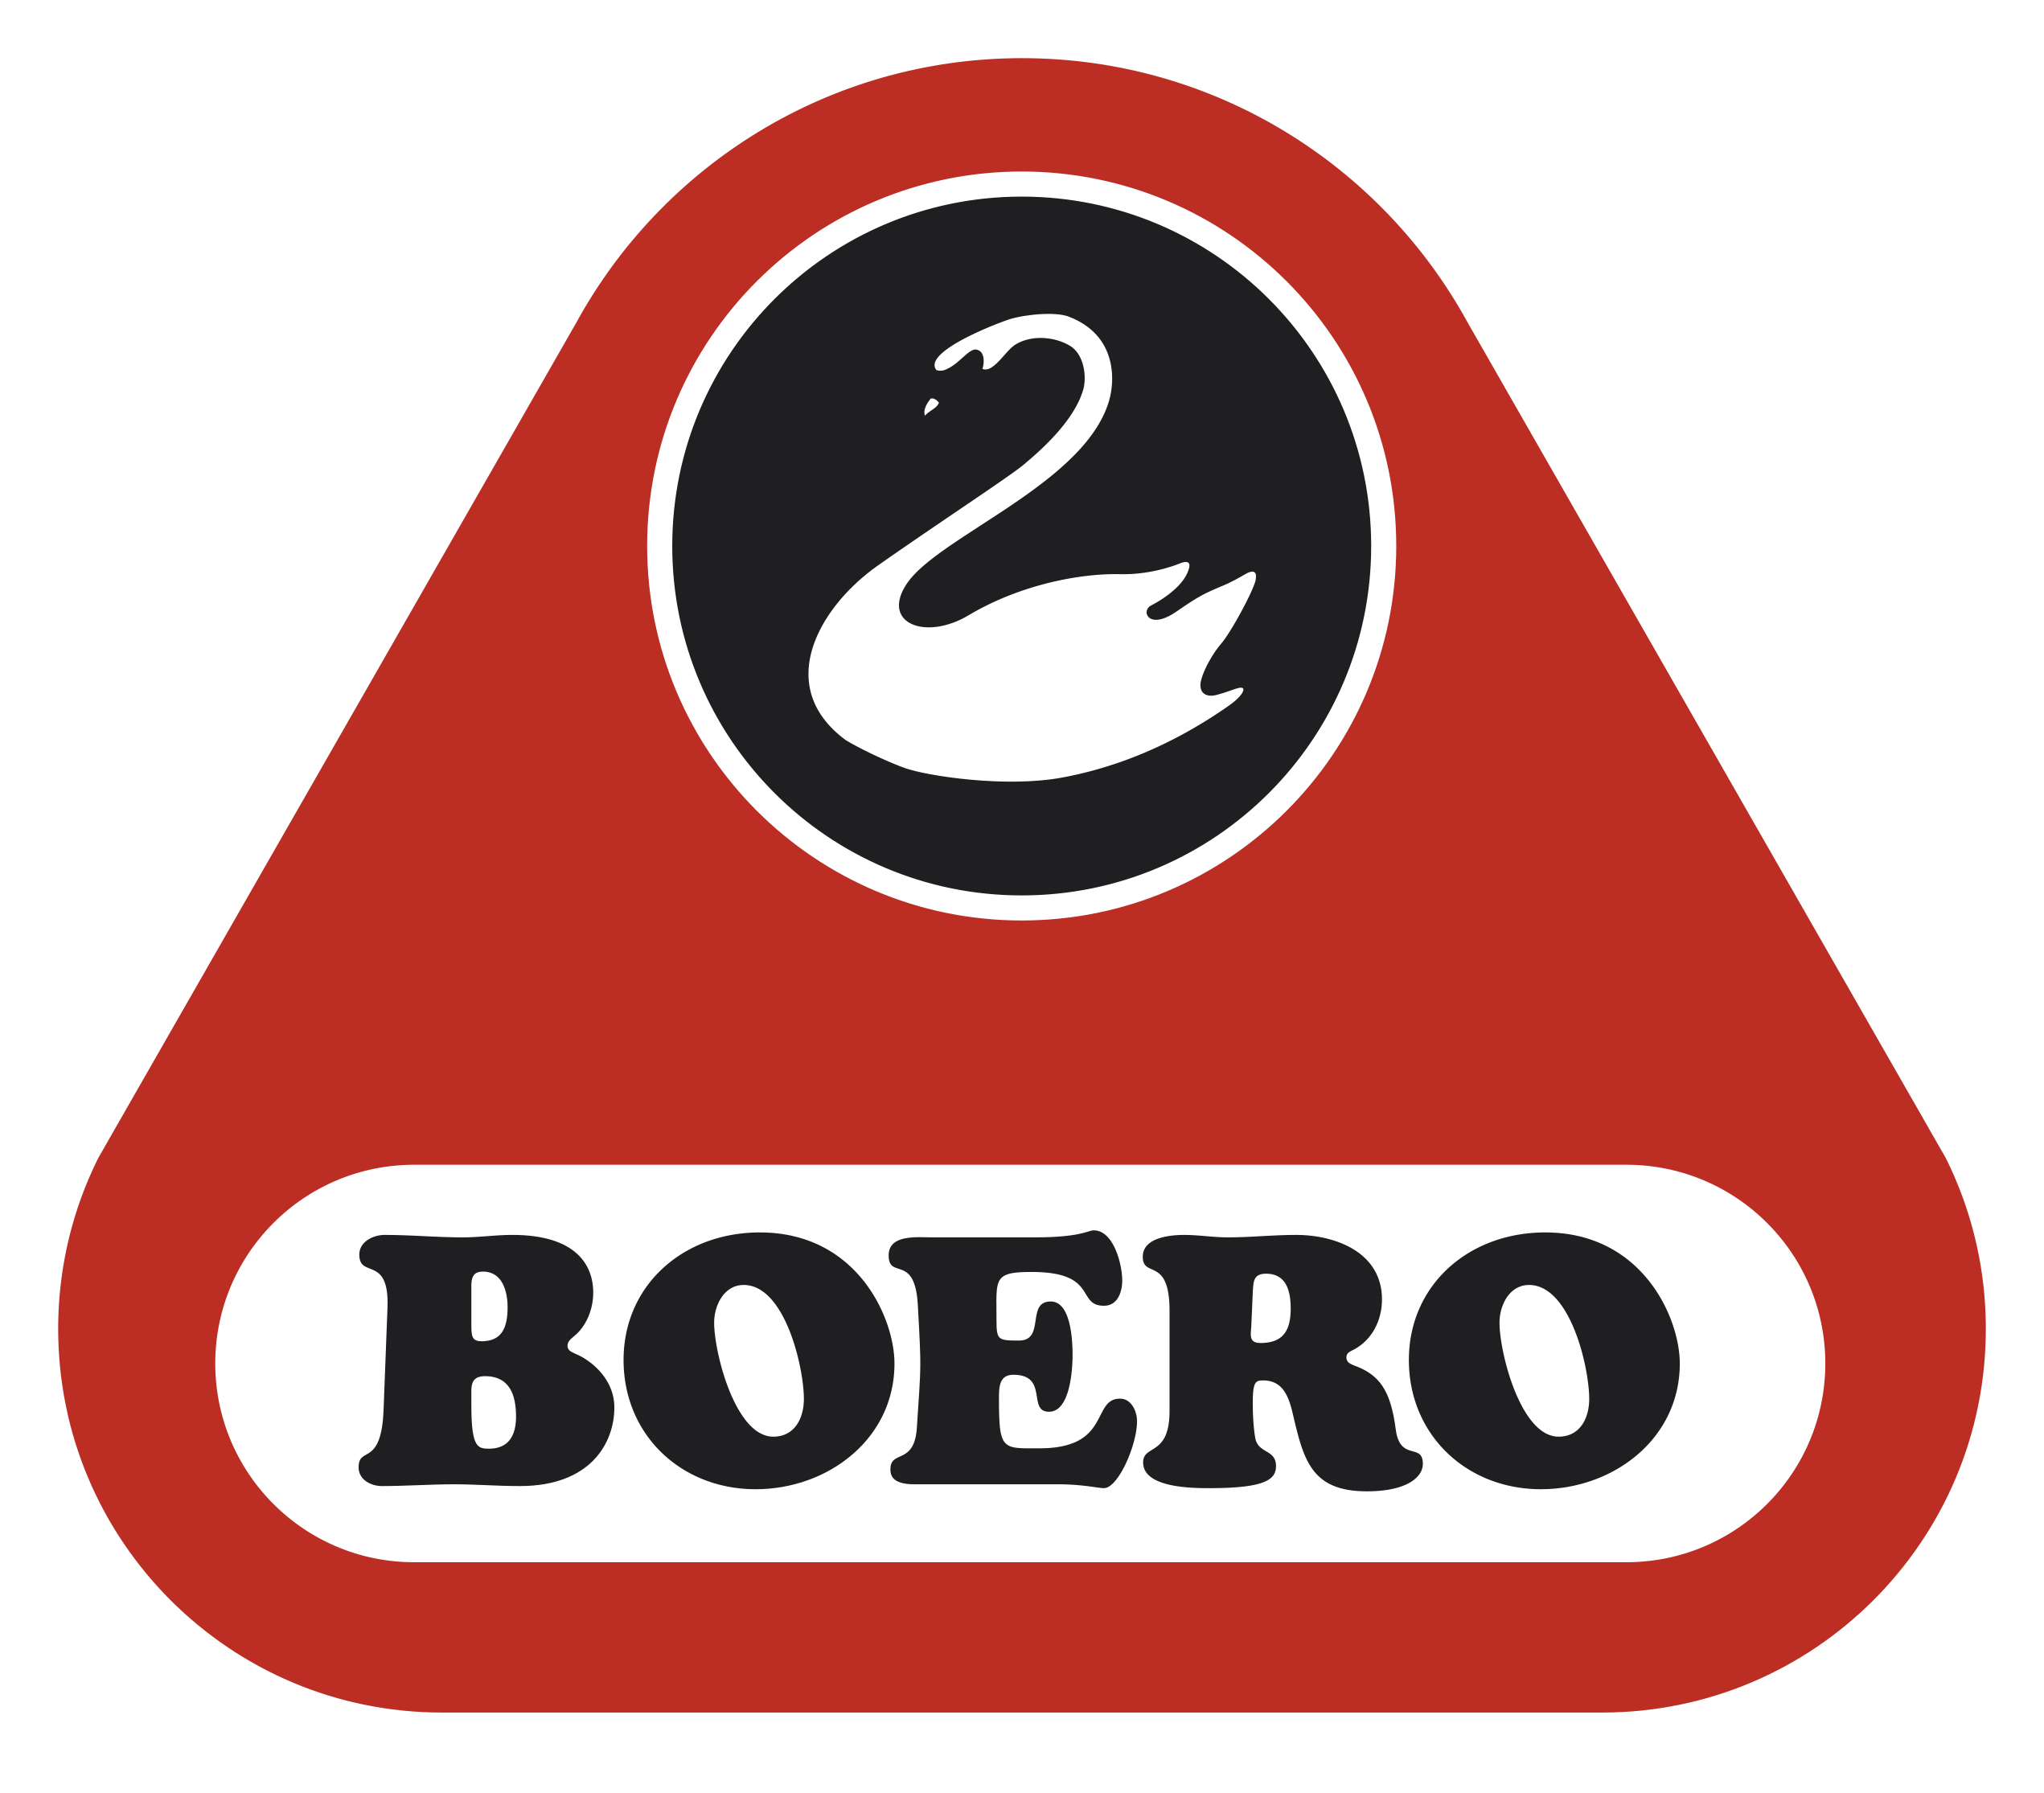 Boero Bartolomeo